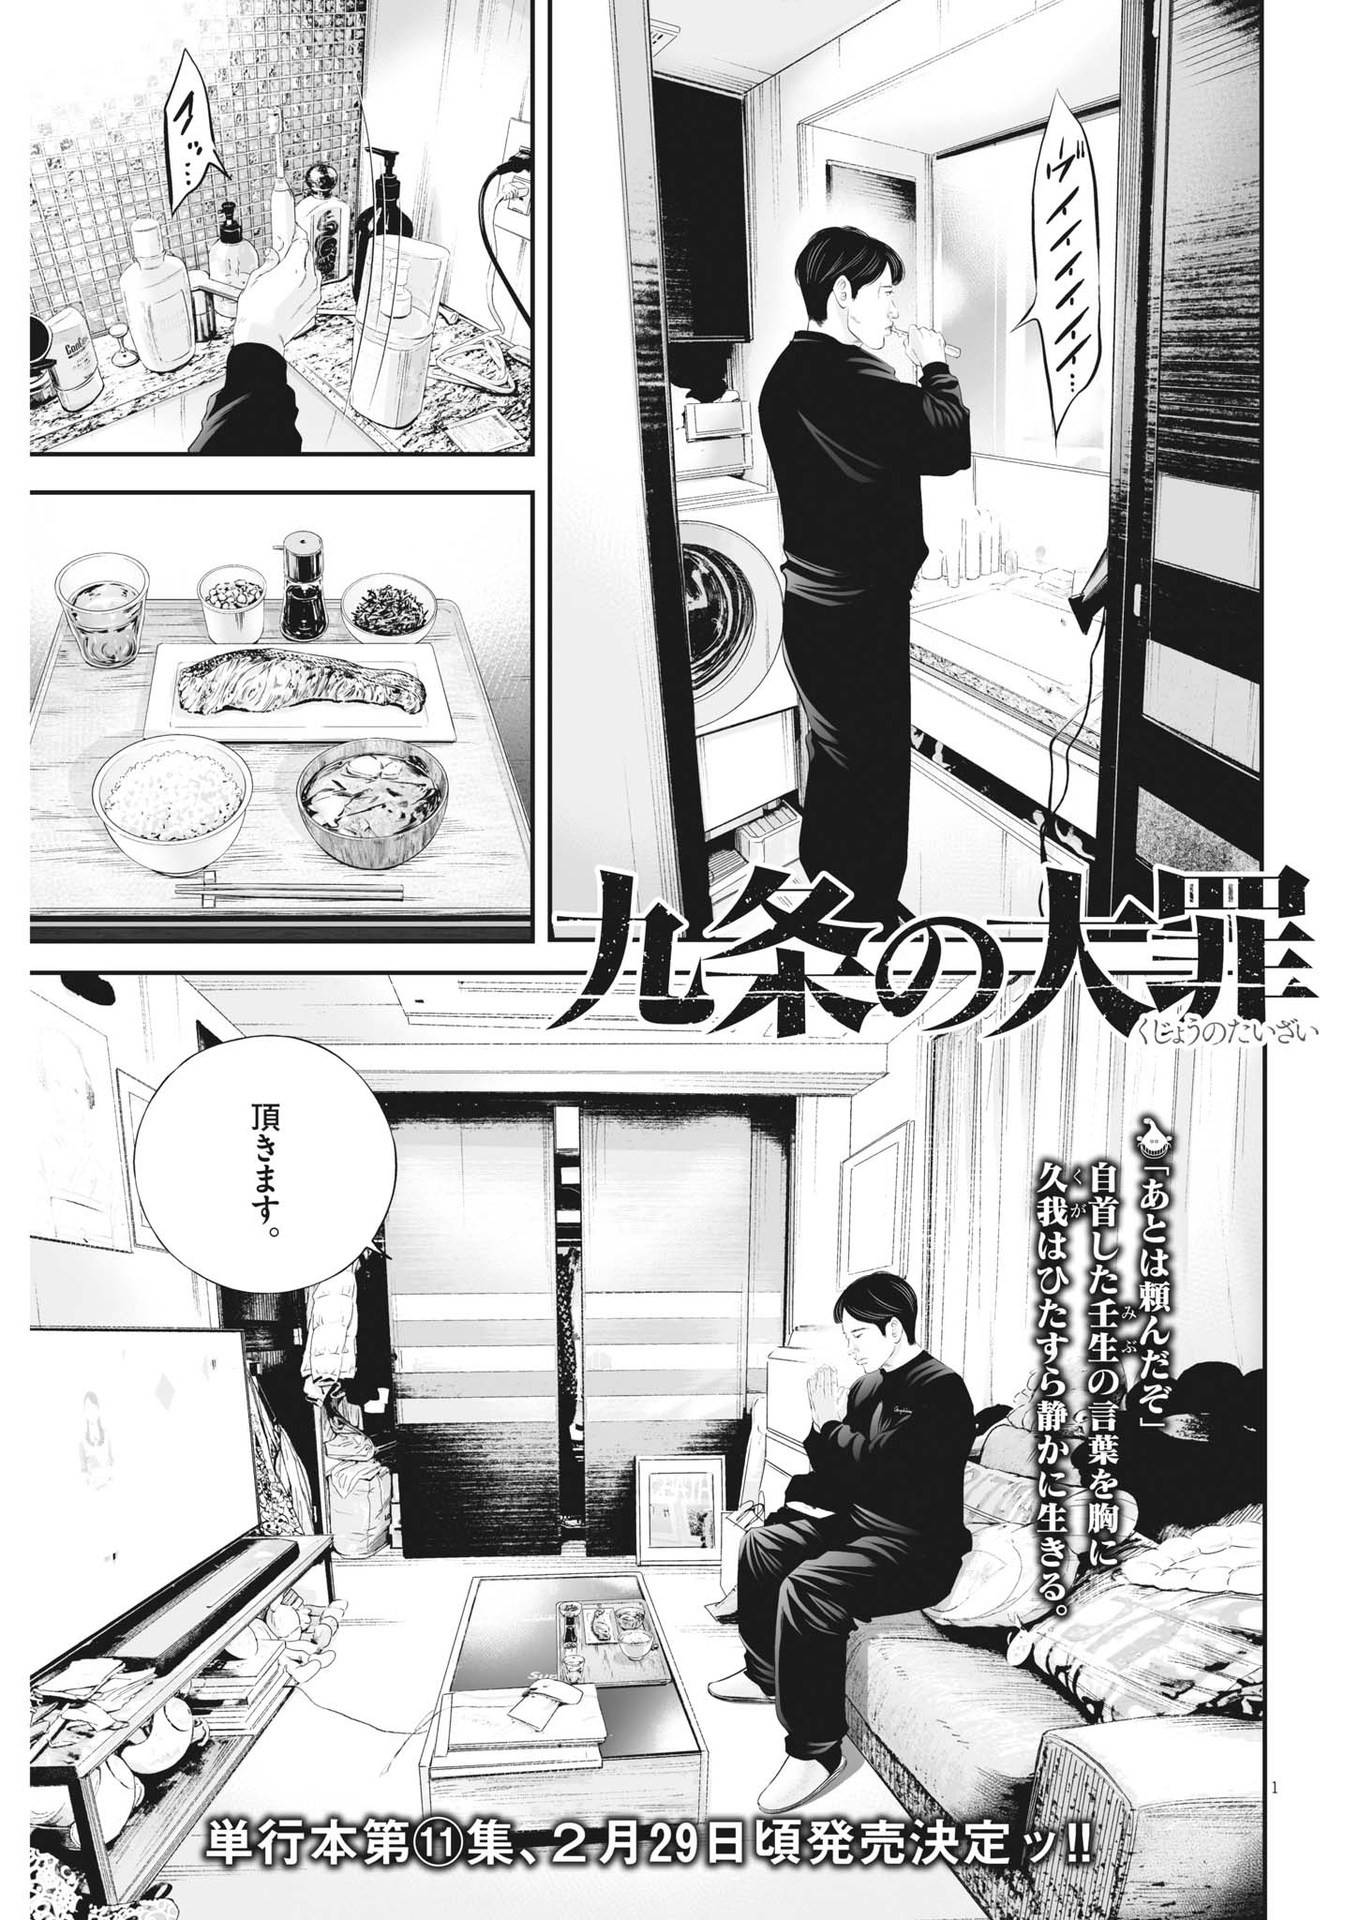 Kujou no Taizai - Chapter 95 - Page 1